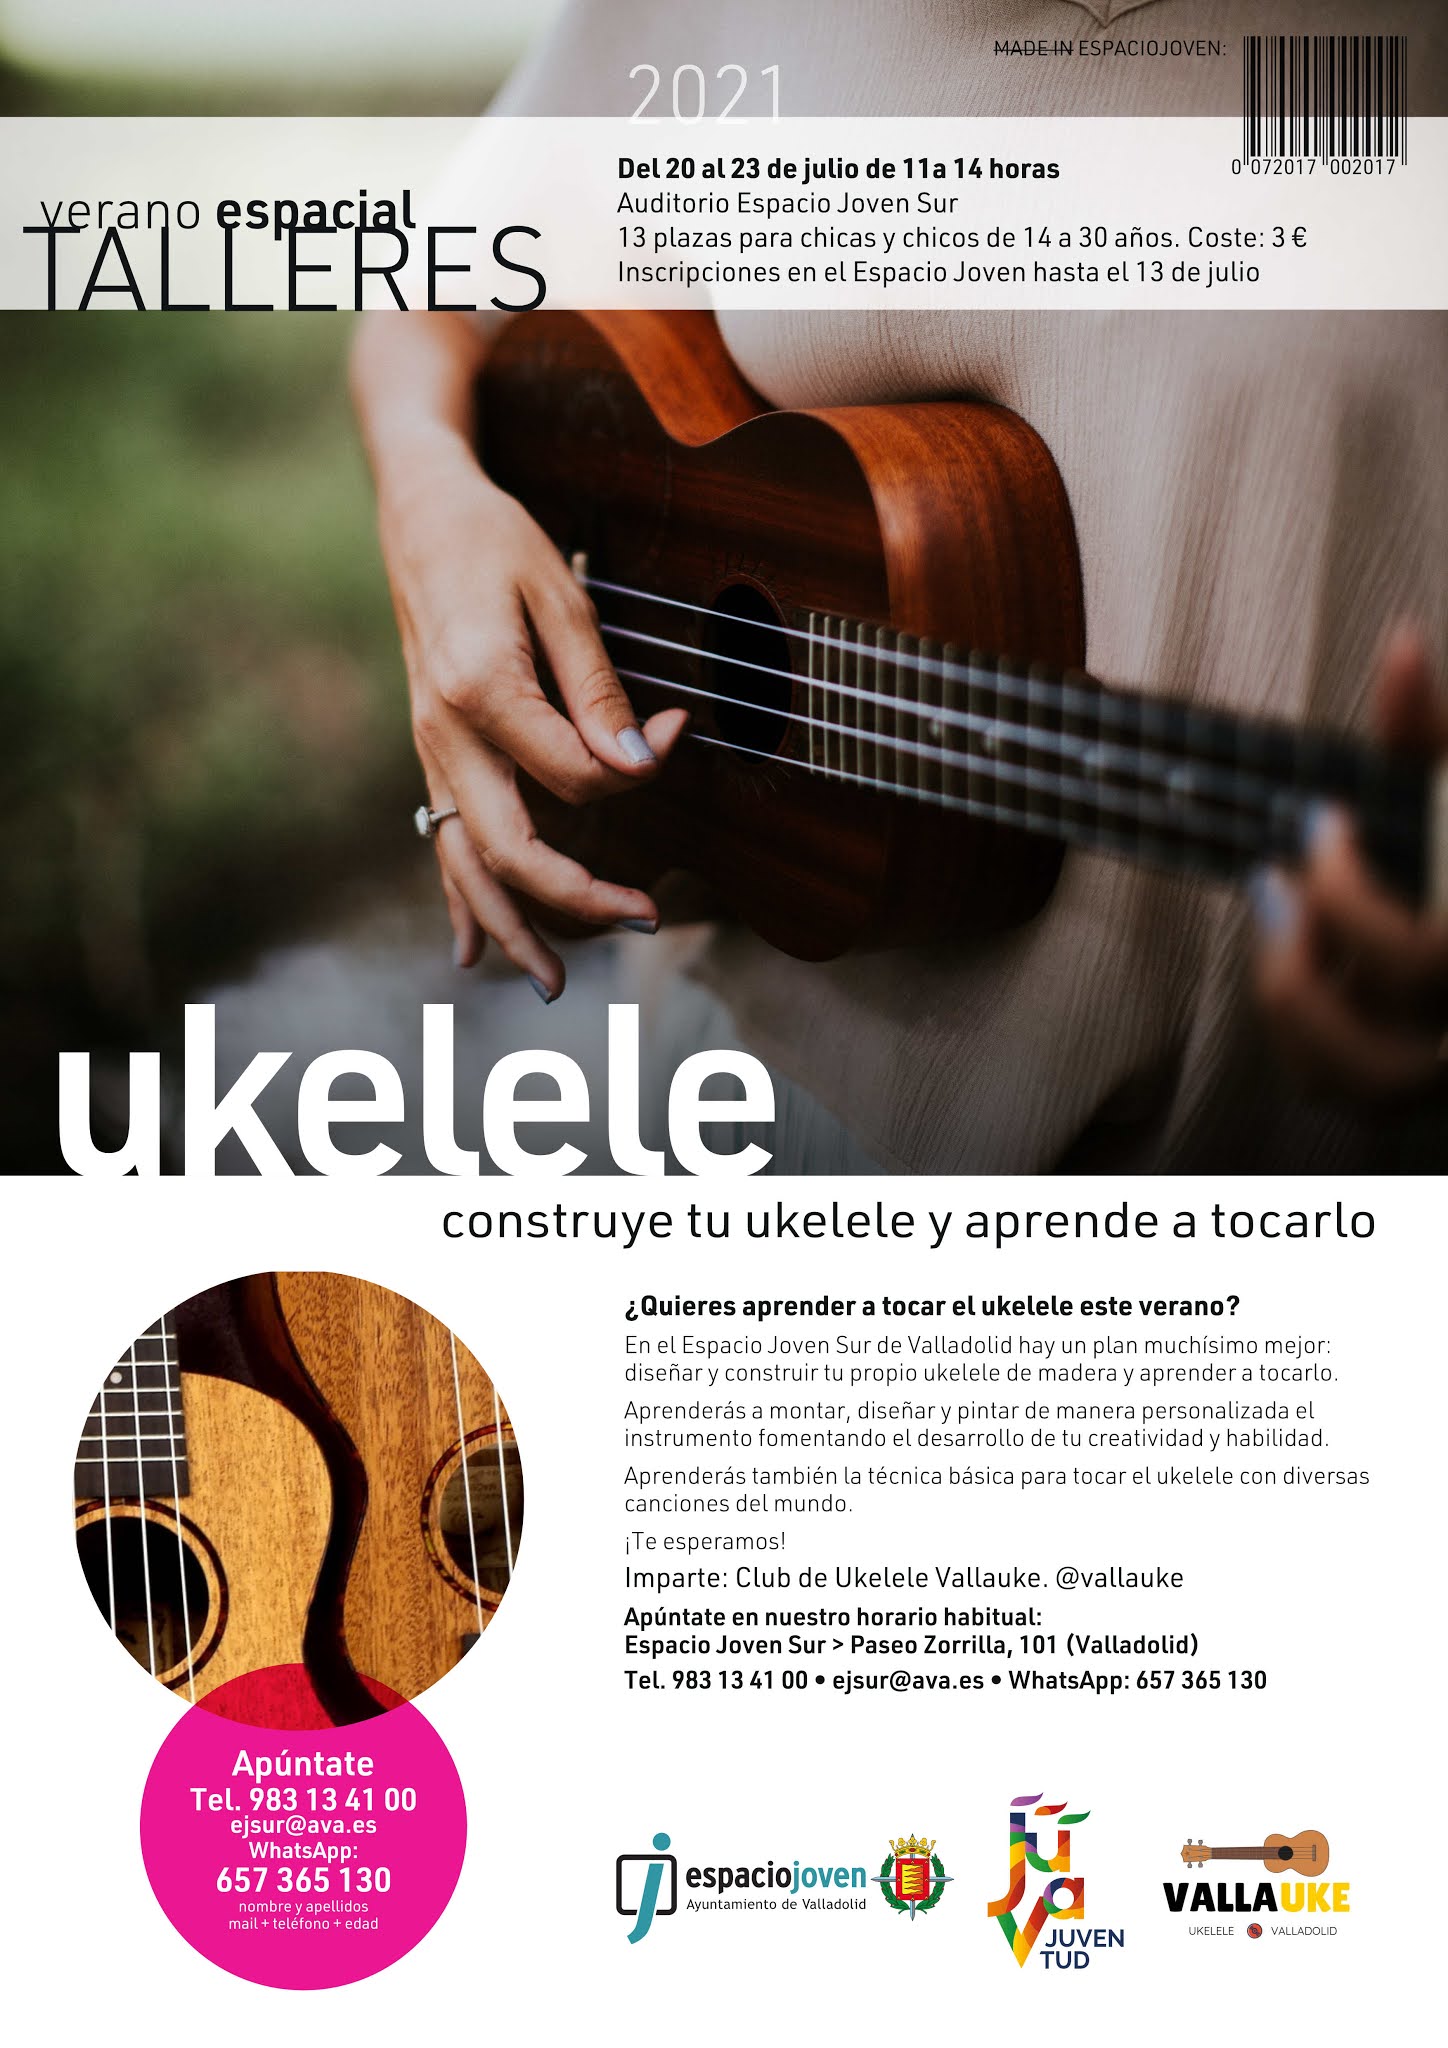 Taller de Ukelele en el Espacio Joven Sur. Diseña y fabrica tu propio ukelele y aprende a tocarlo. Del 20 al 23 de julio (de 11:00 a 14:00)